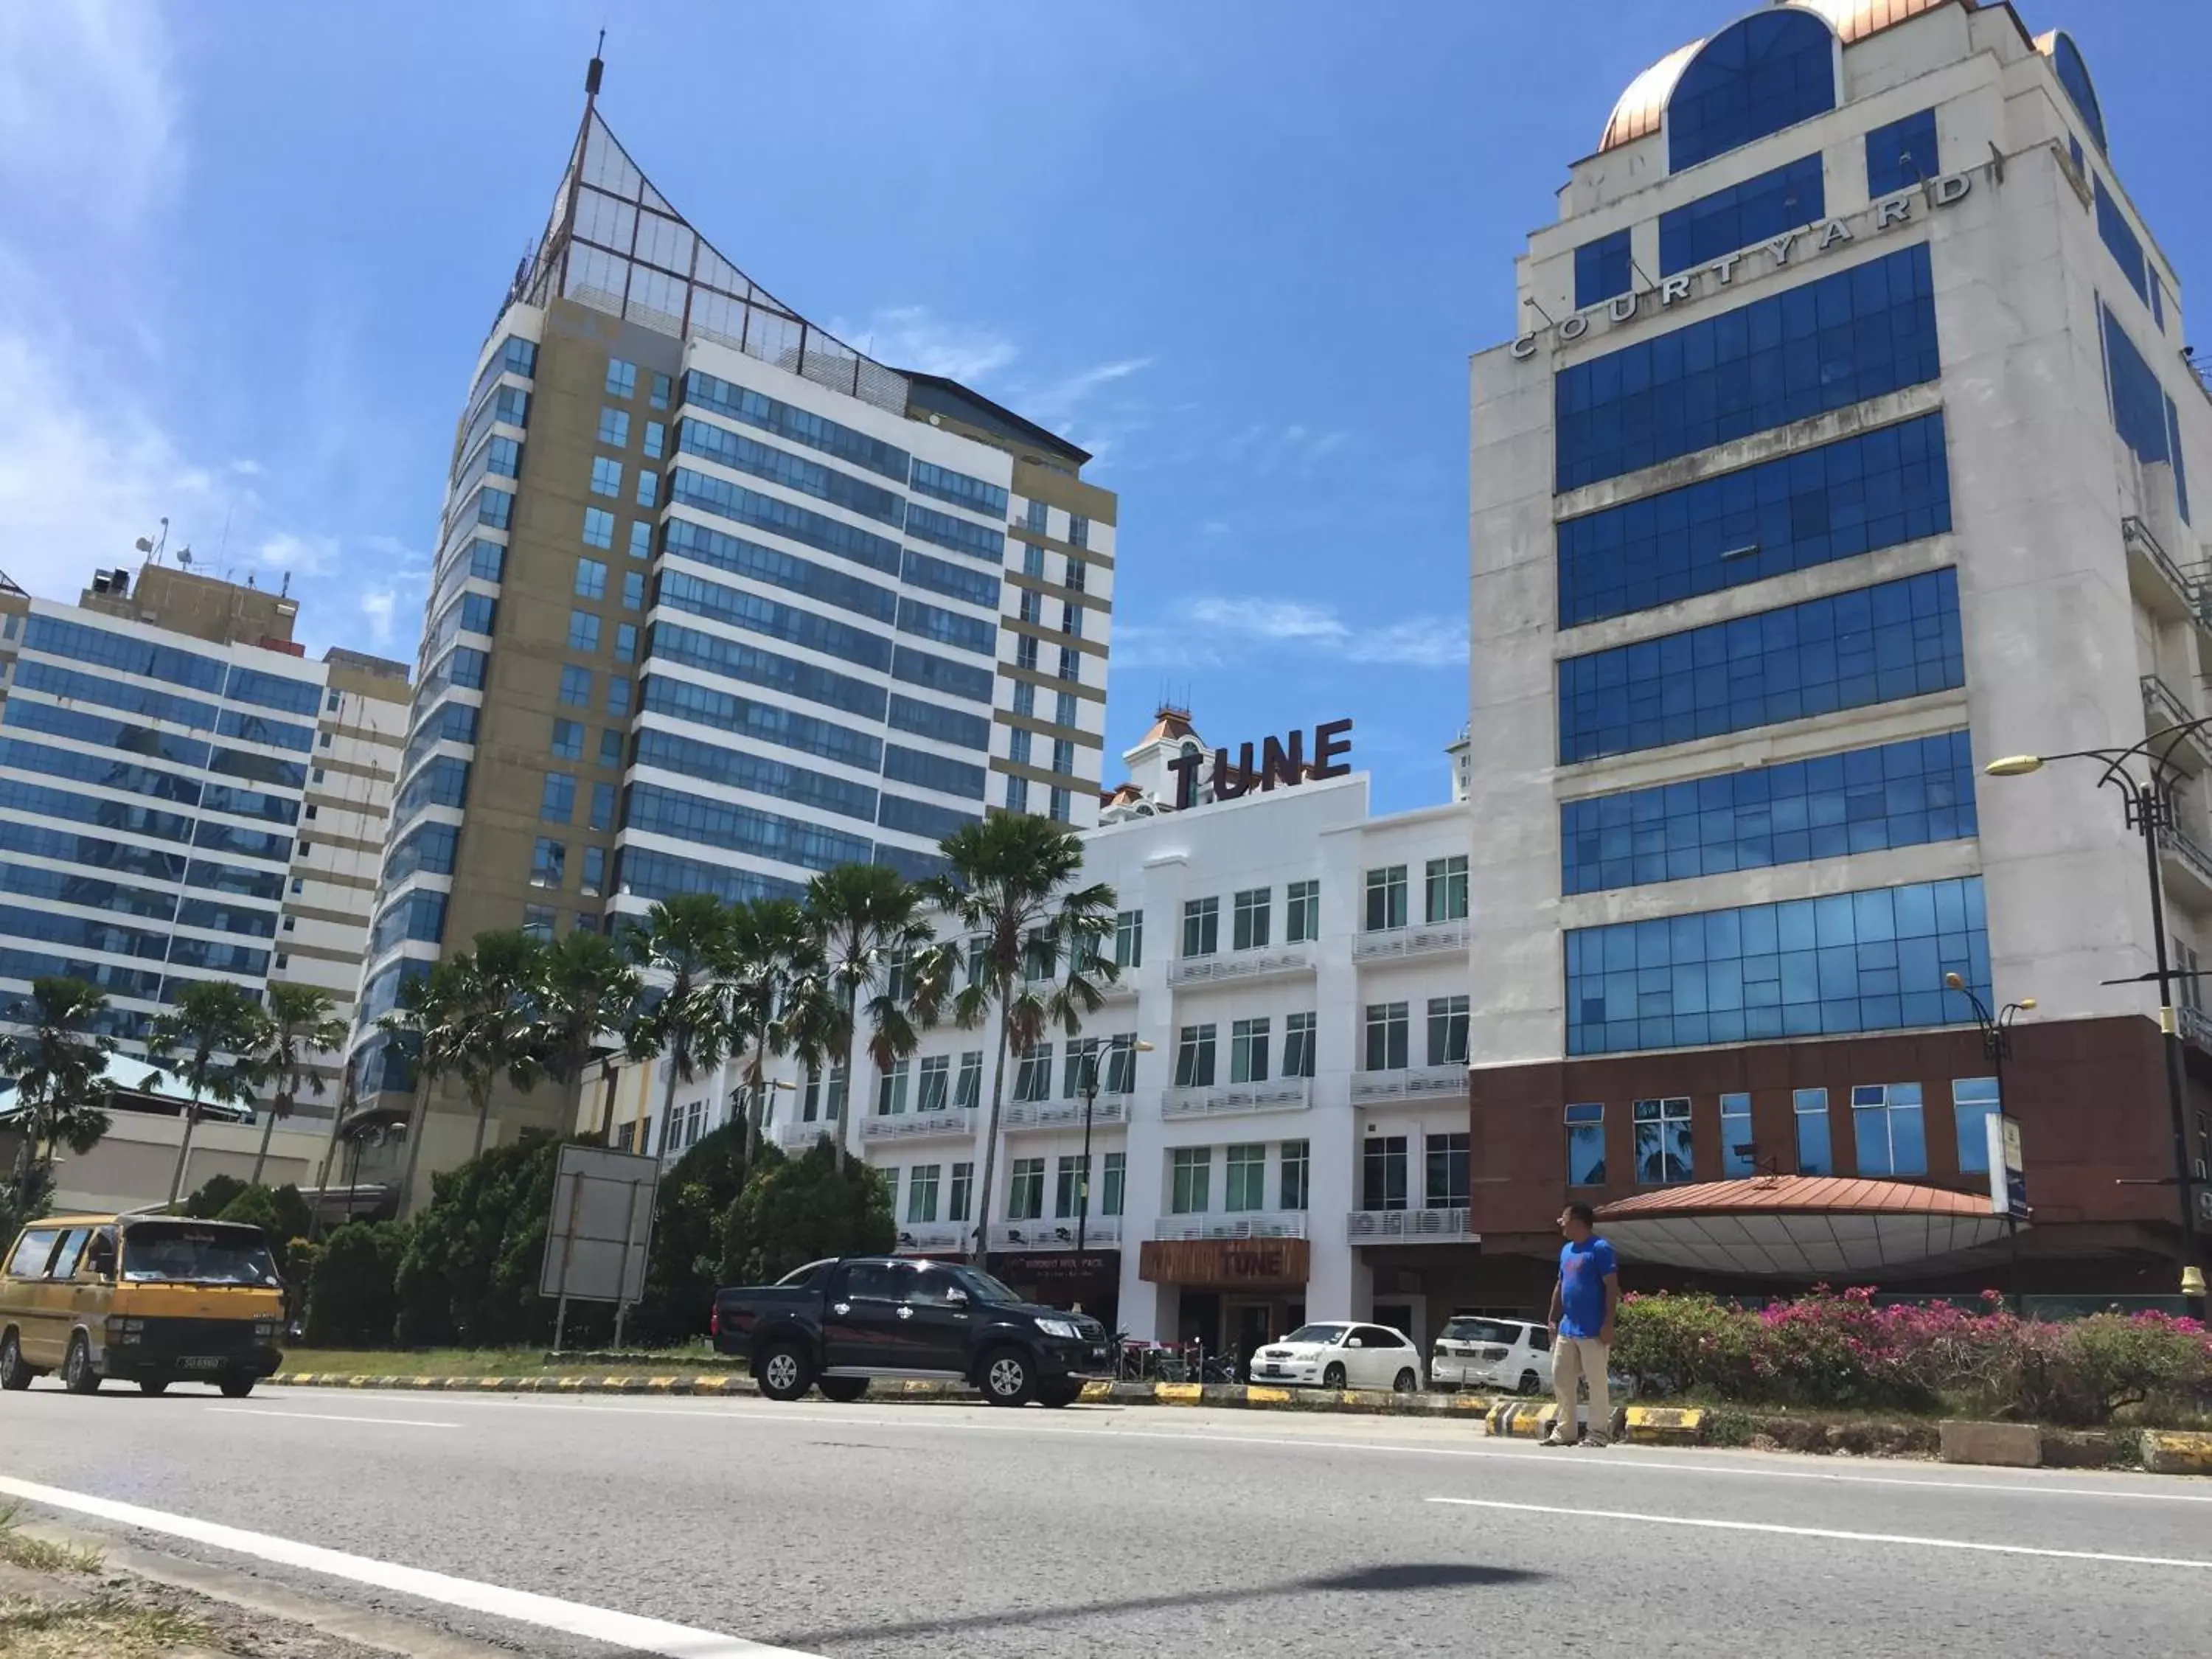 Property Building in Tune Hotel - 1Borneo Kota Kinabalu